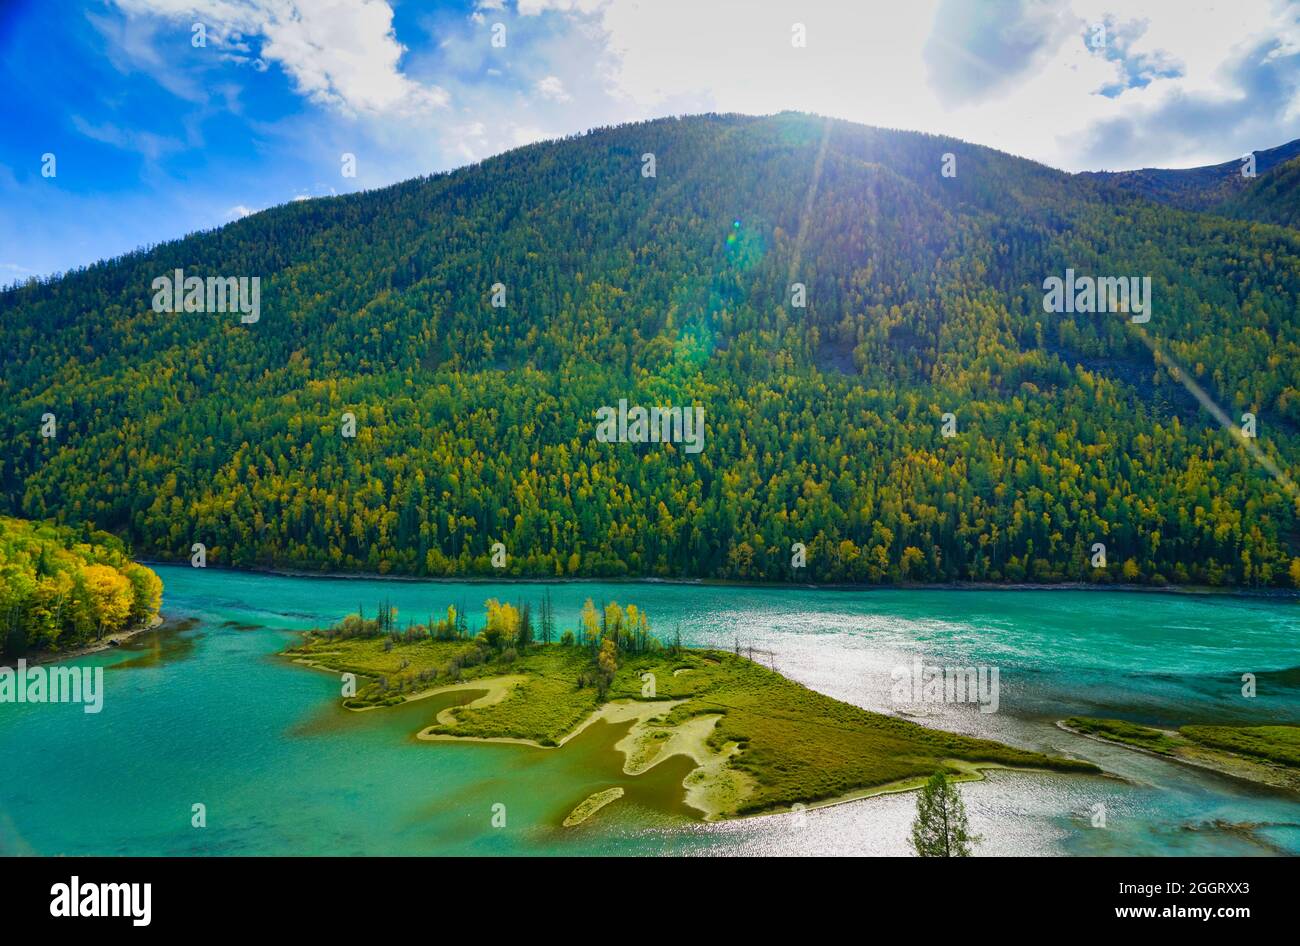 Wolong Bay of Kanas Lake. Kristallblauer Fluss, kleine Sandbank.Grüne Baumhügel. Die natürliche Schönheit des Paradieses. Kanas Nature Reserve. Xinjiang Provi Stockfoto